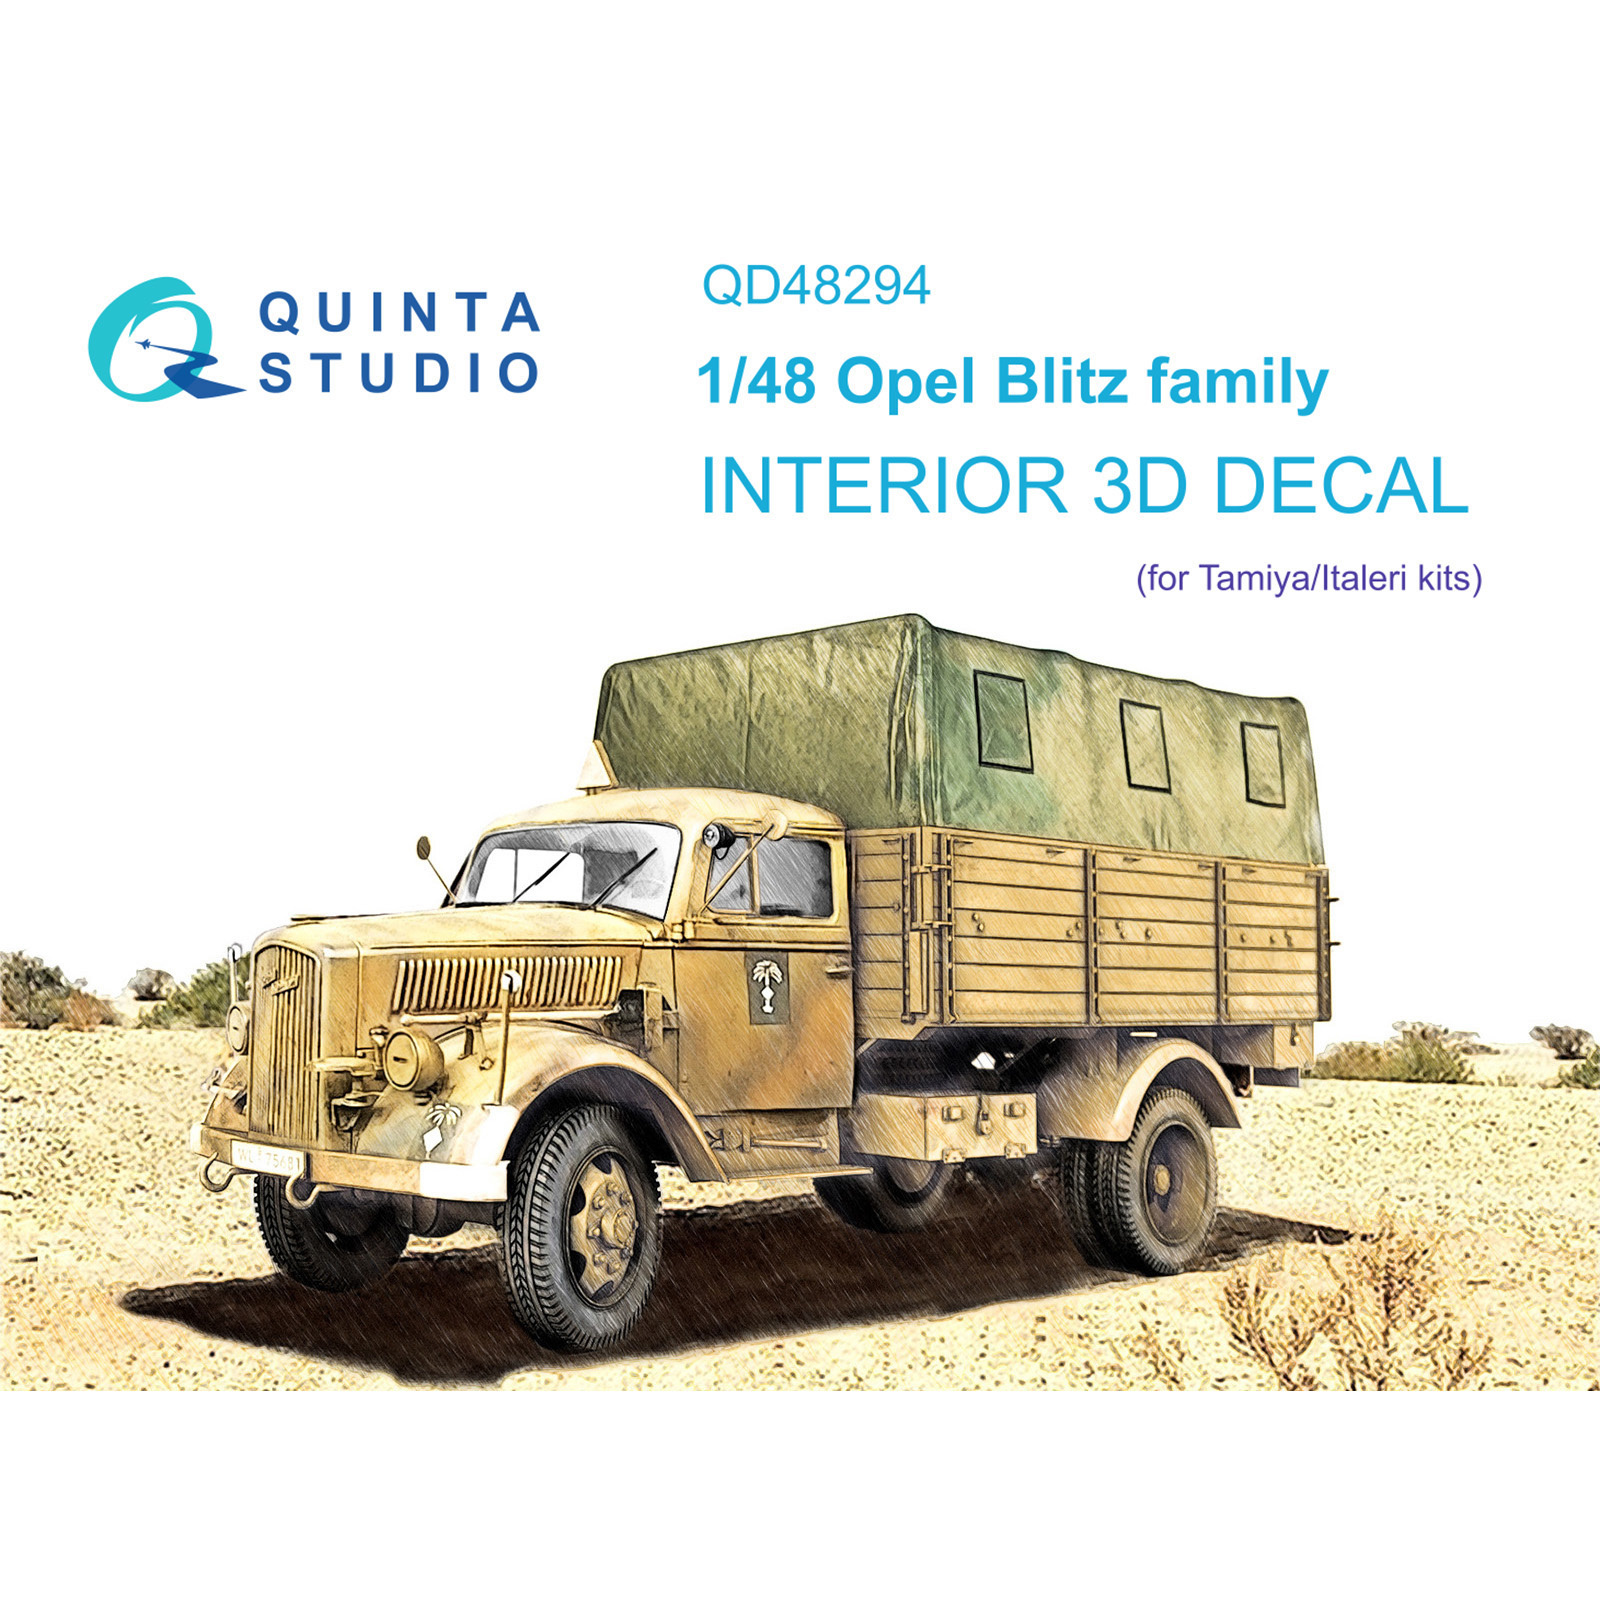 QD48294 Quinta Studio 1/48 3D Cabin Interior Decal Opel Blitz family (Tamiya/Italeri)